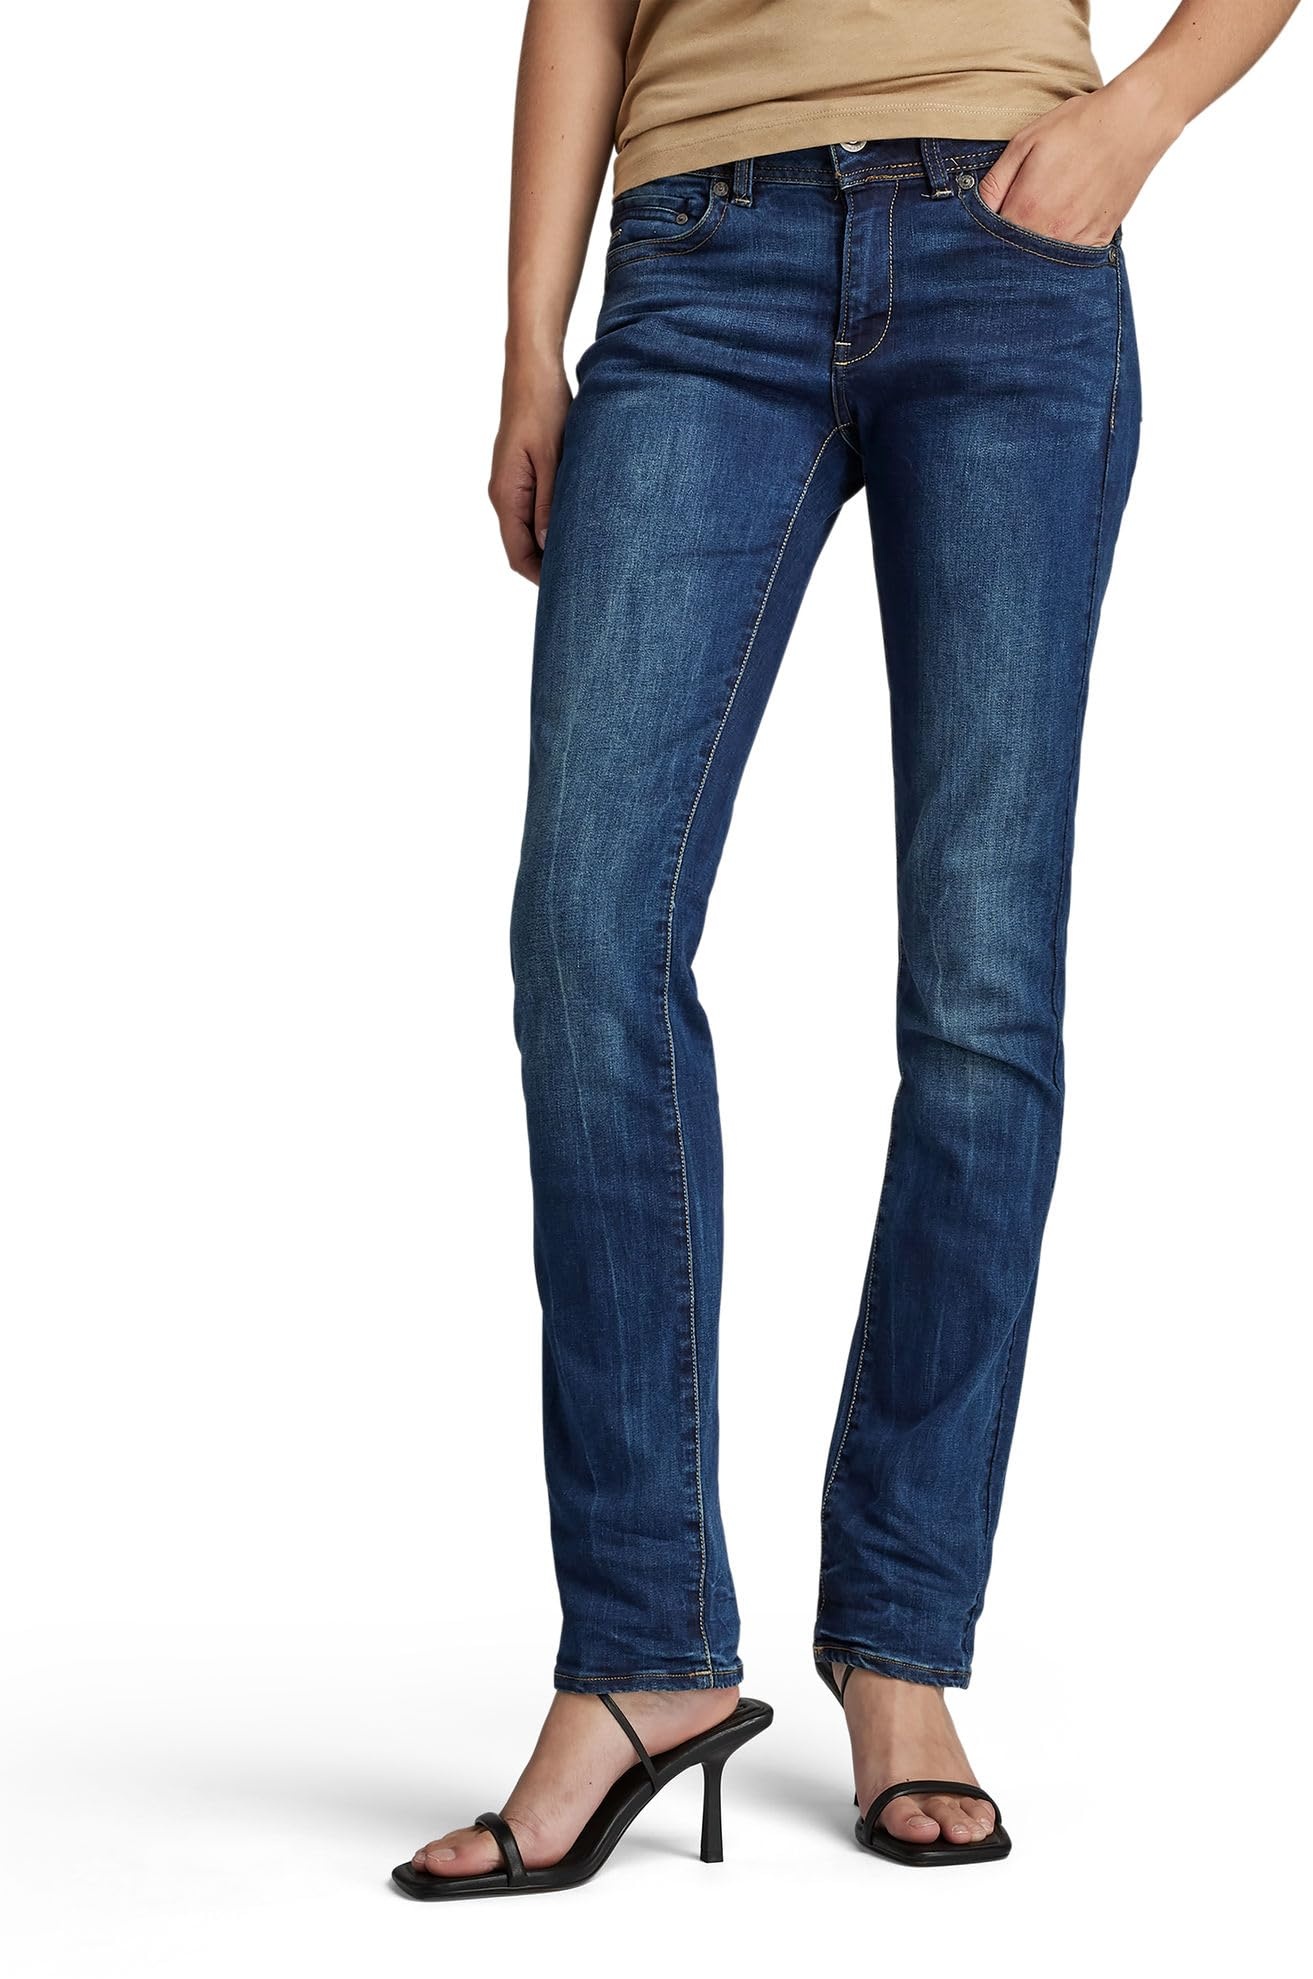 G-STAR RAW Damen Midge Saddle Straight Jeans, Blau (dk aged D02153-6553-89), 25W / 32L